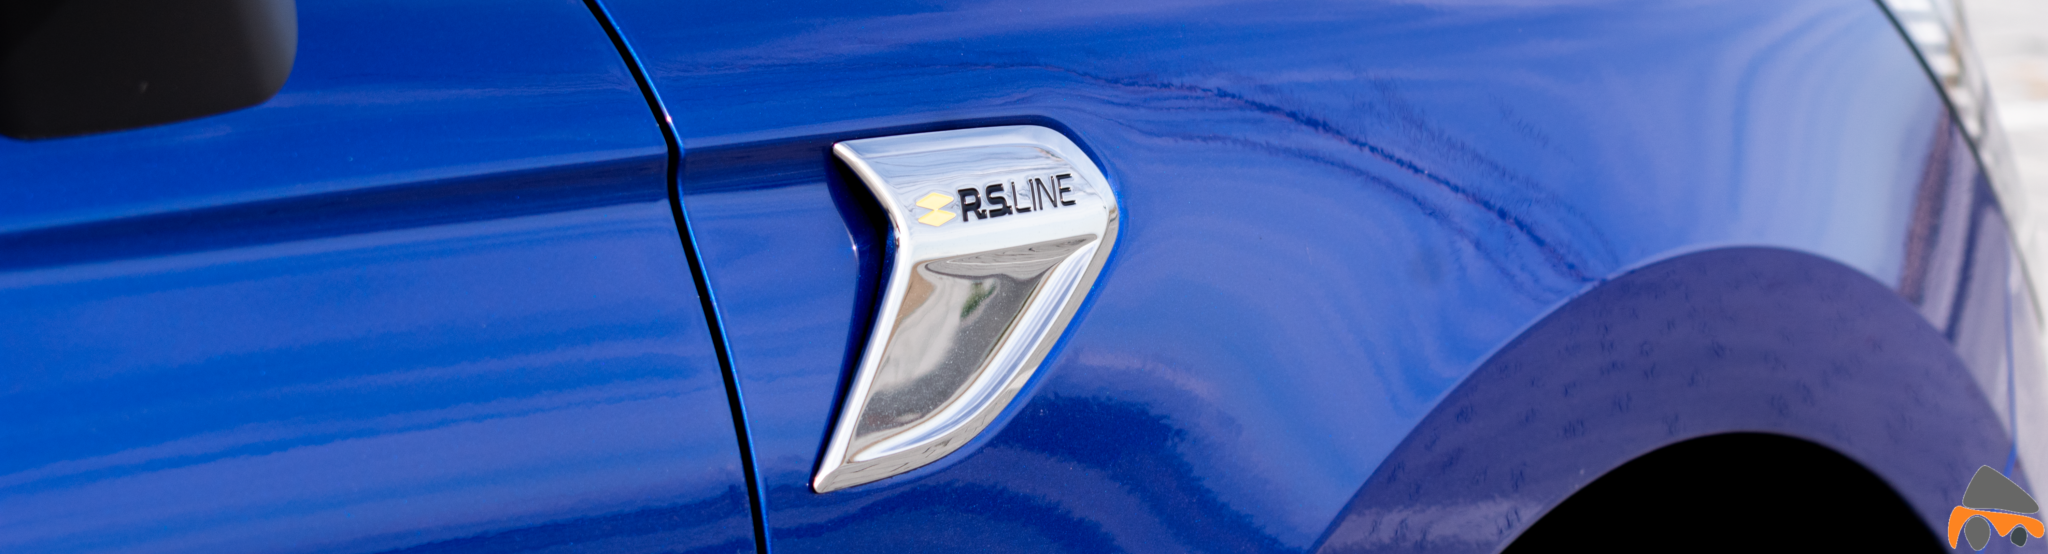 Logo RS Line Renault Clio scaled - Renault Clio V 2020 1.3 TCe 130 CV: ¡Menudo cambio!